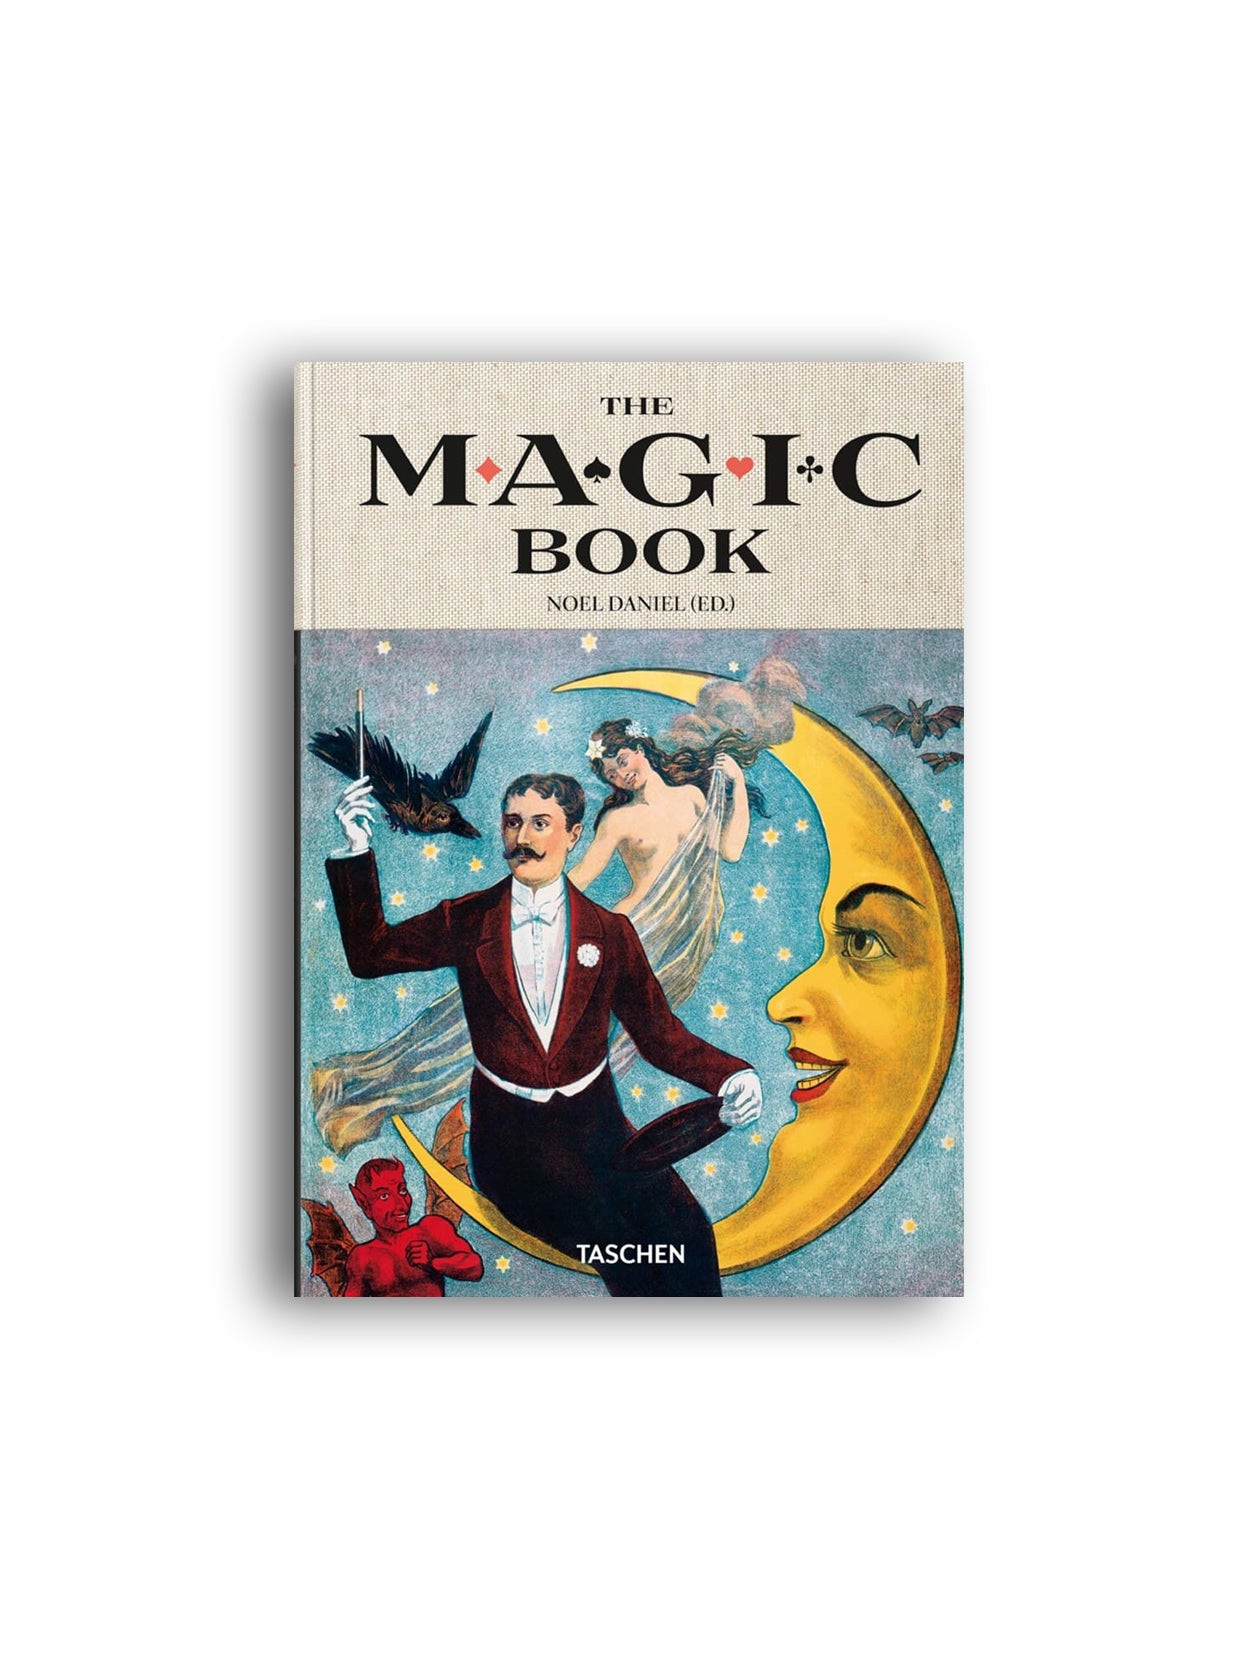 TASCHEN Books: The Magic Book